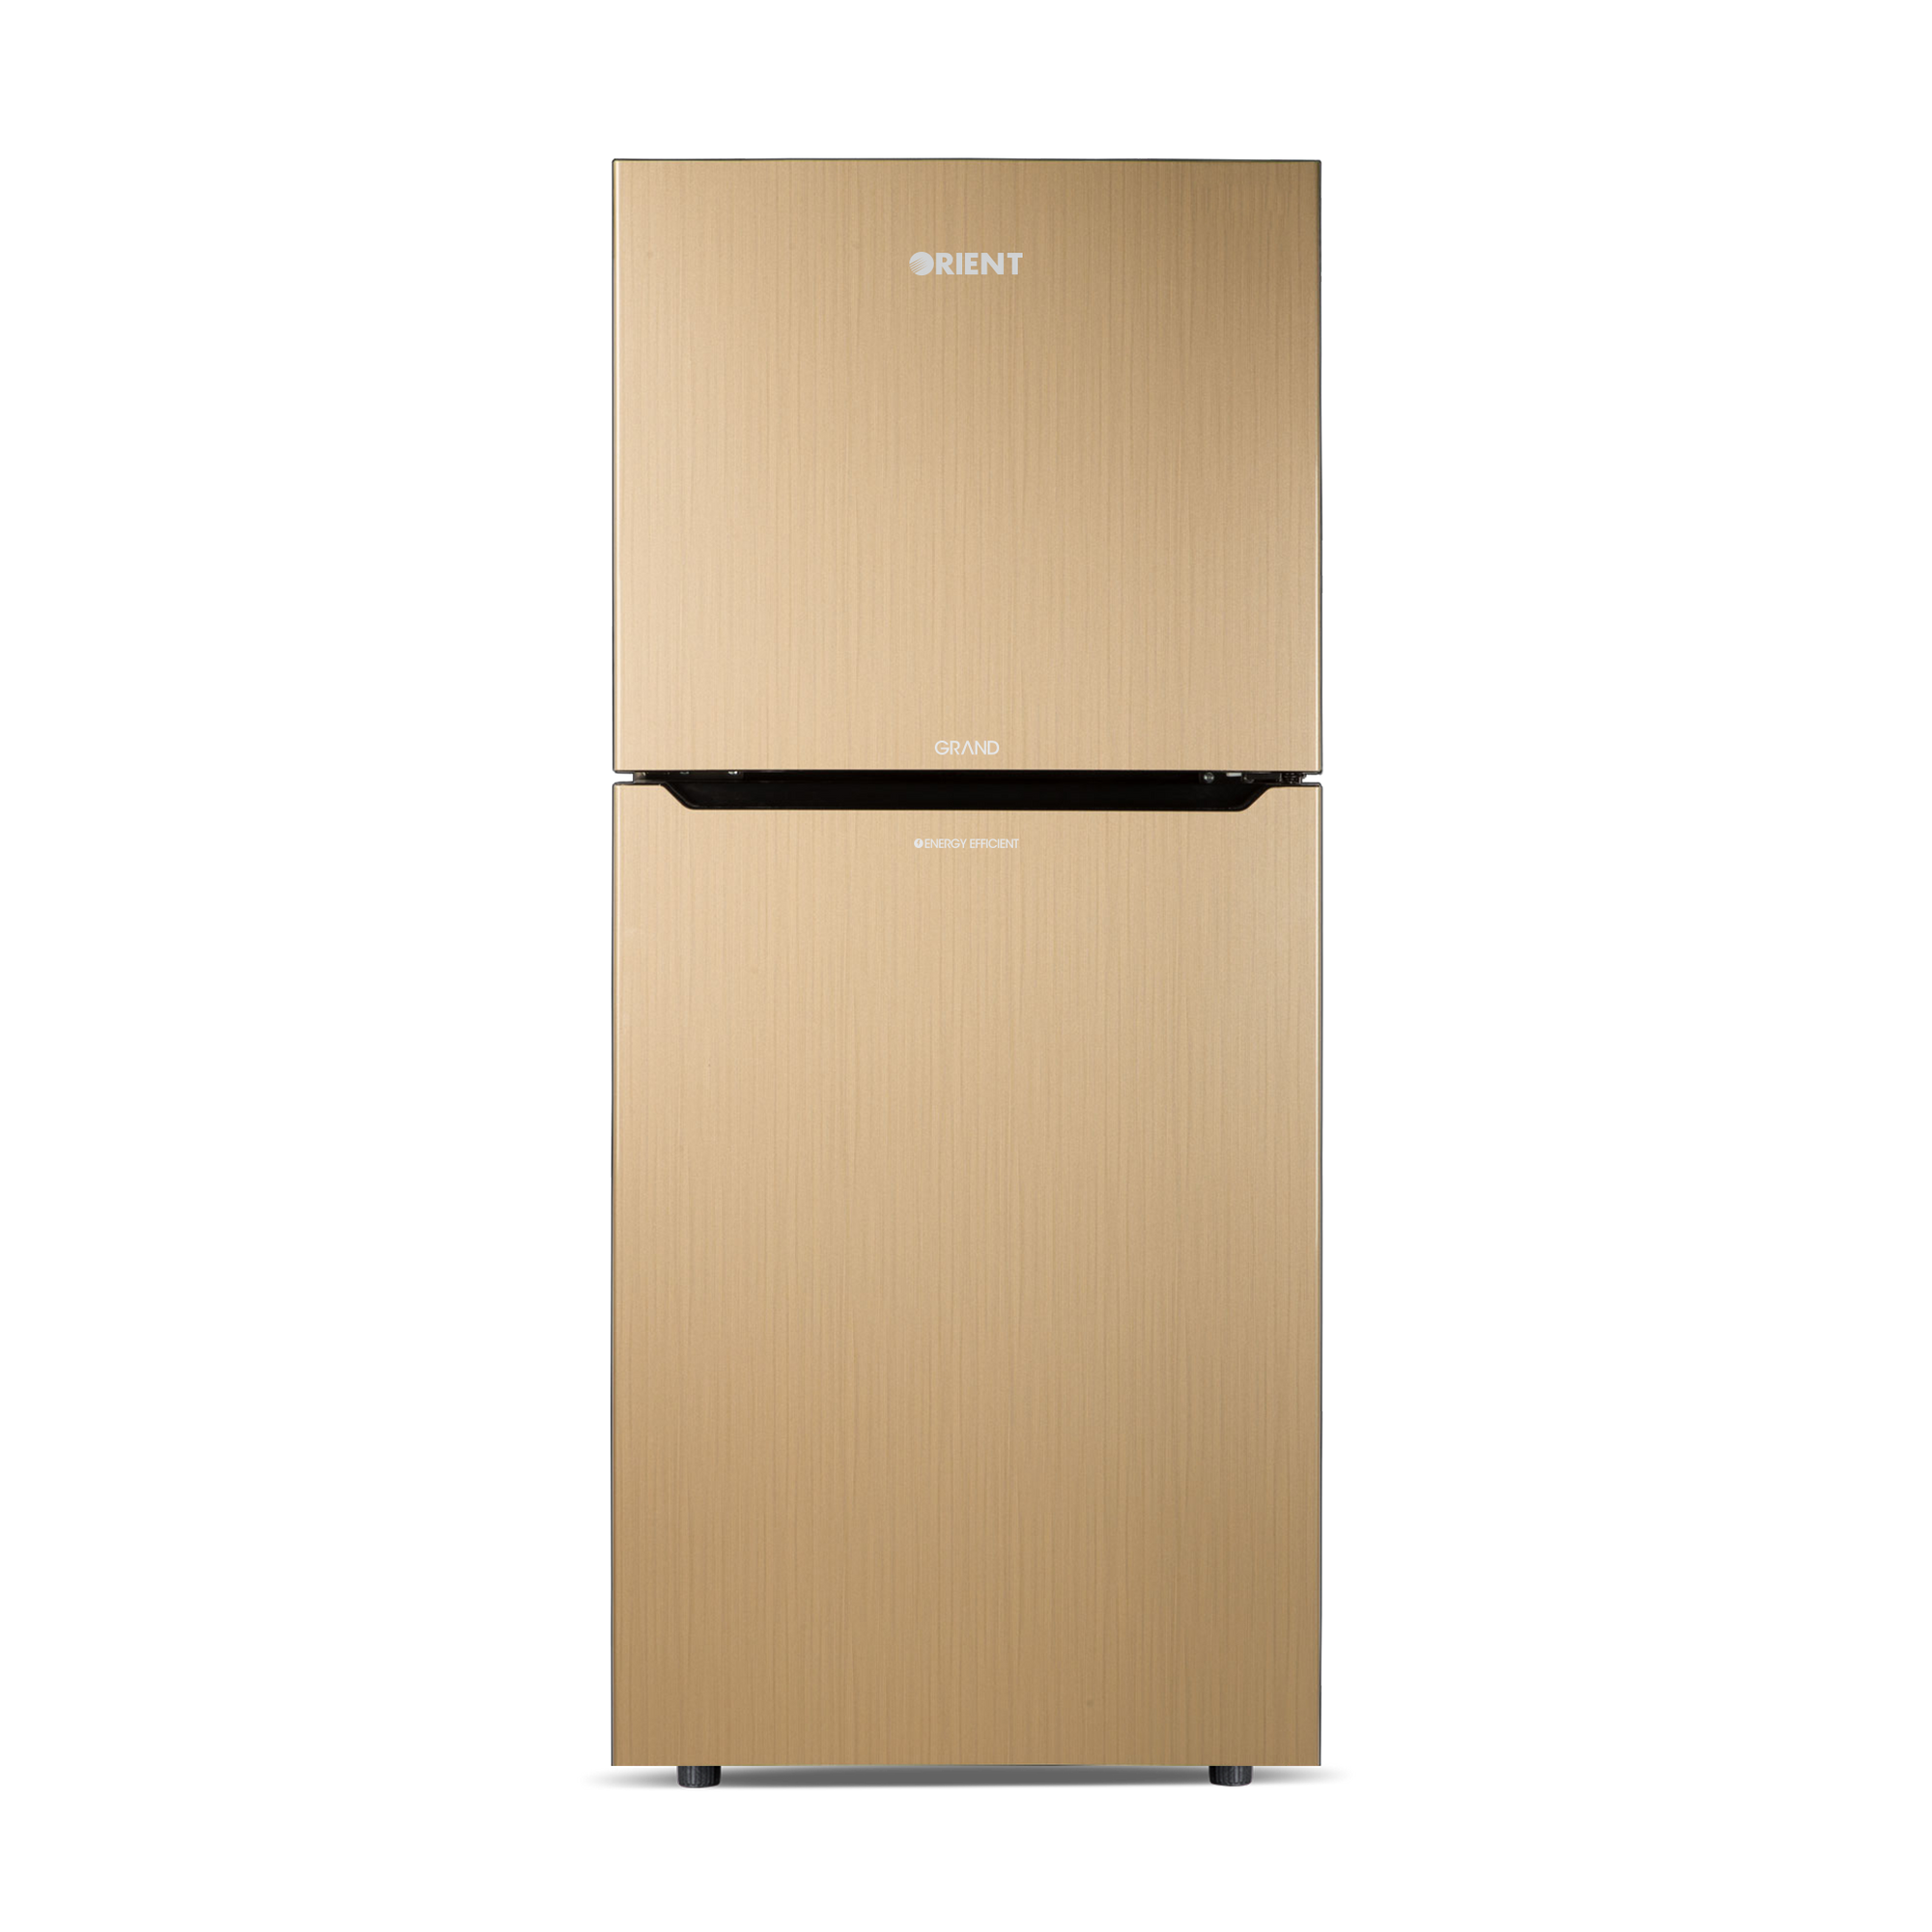 Orient Refrigerator Double Door - 355 Grand VCM - Jumbo Freezer